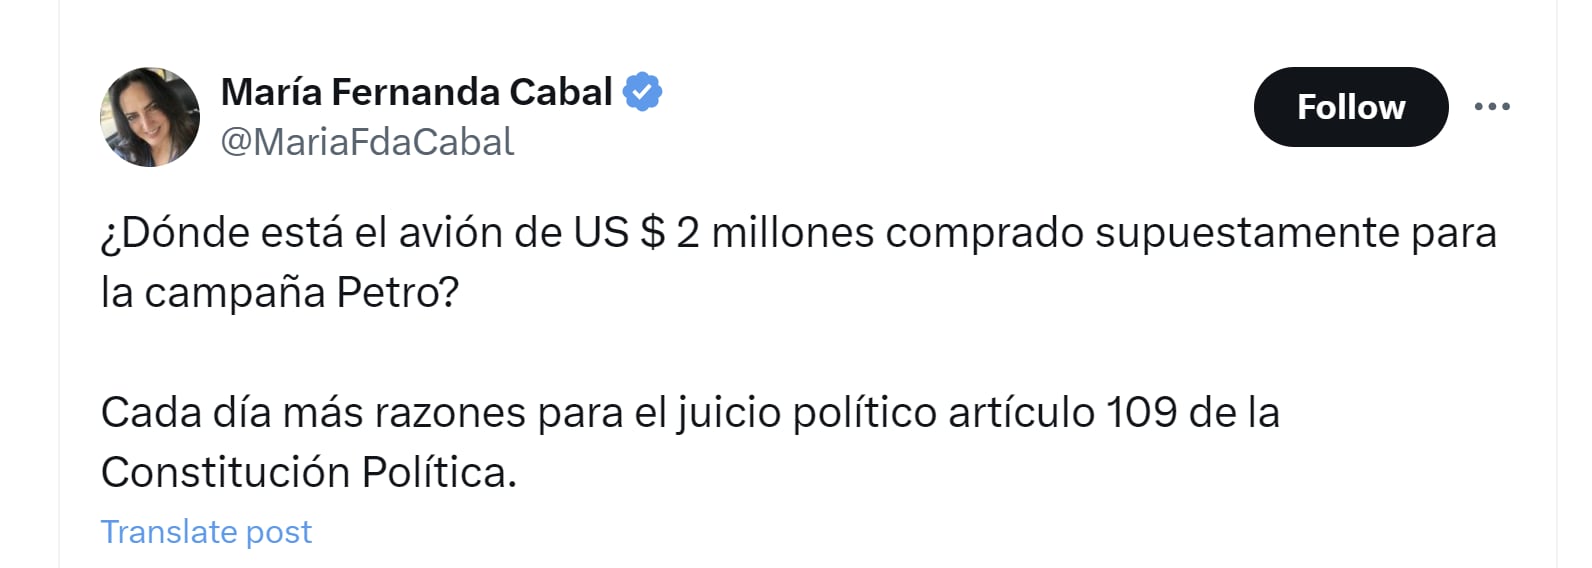 María Fernanda Cabal cuestionó compra de avión, presuntamente para la campaña presidencial de Gustavo Petro - crédito @MariaFdaCabal/X